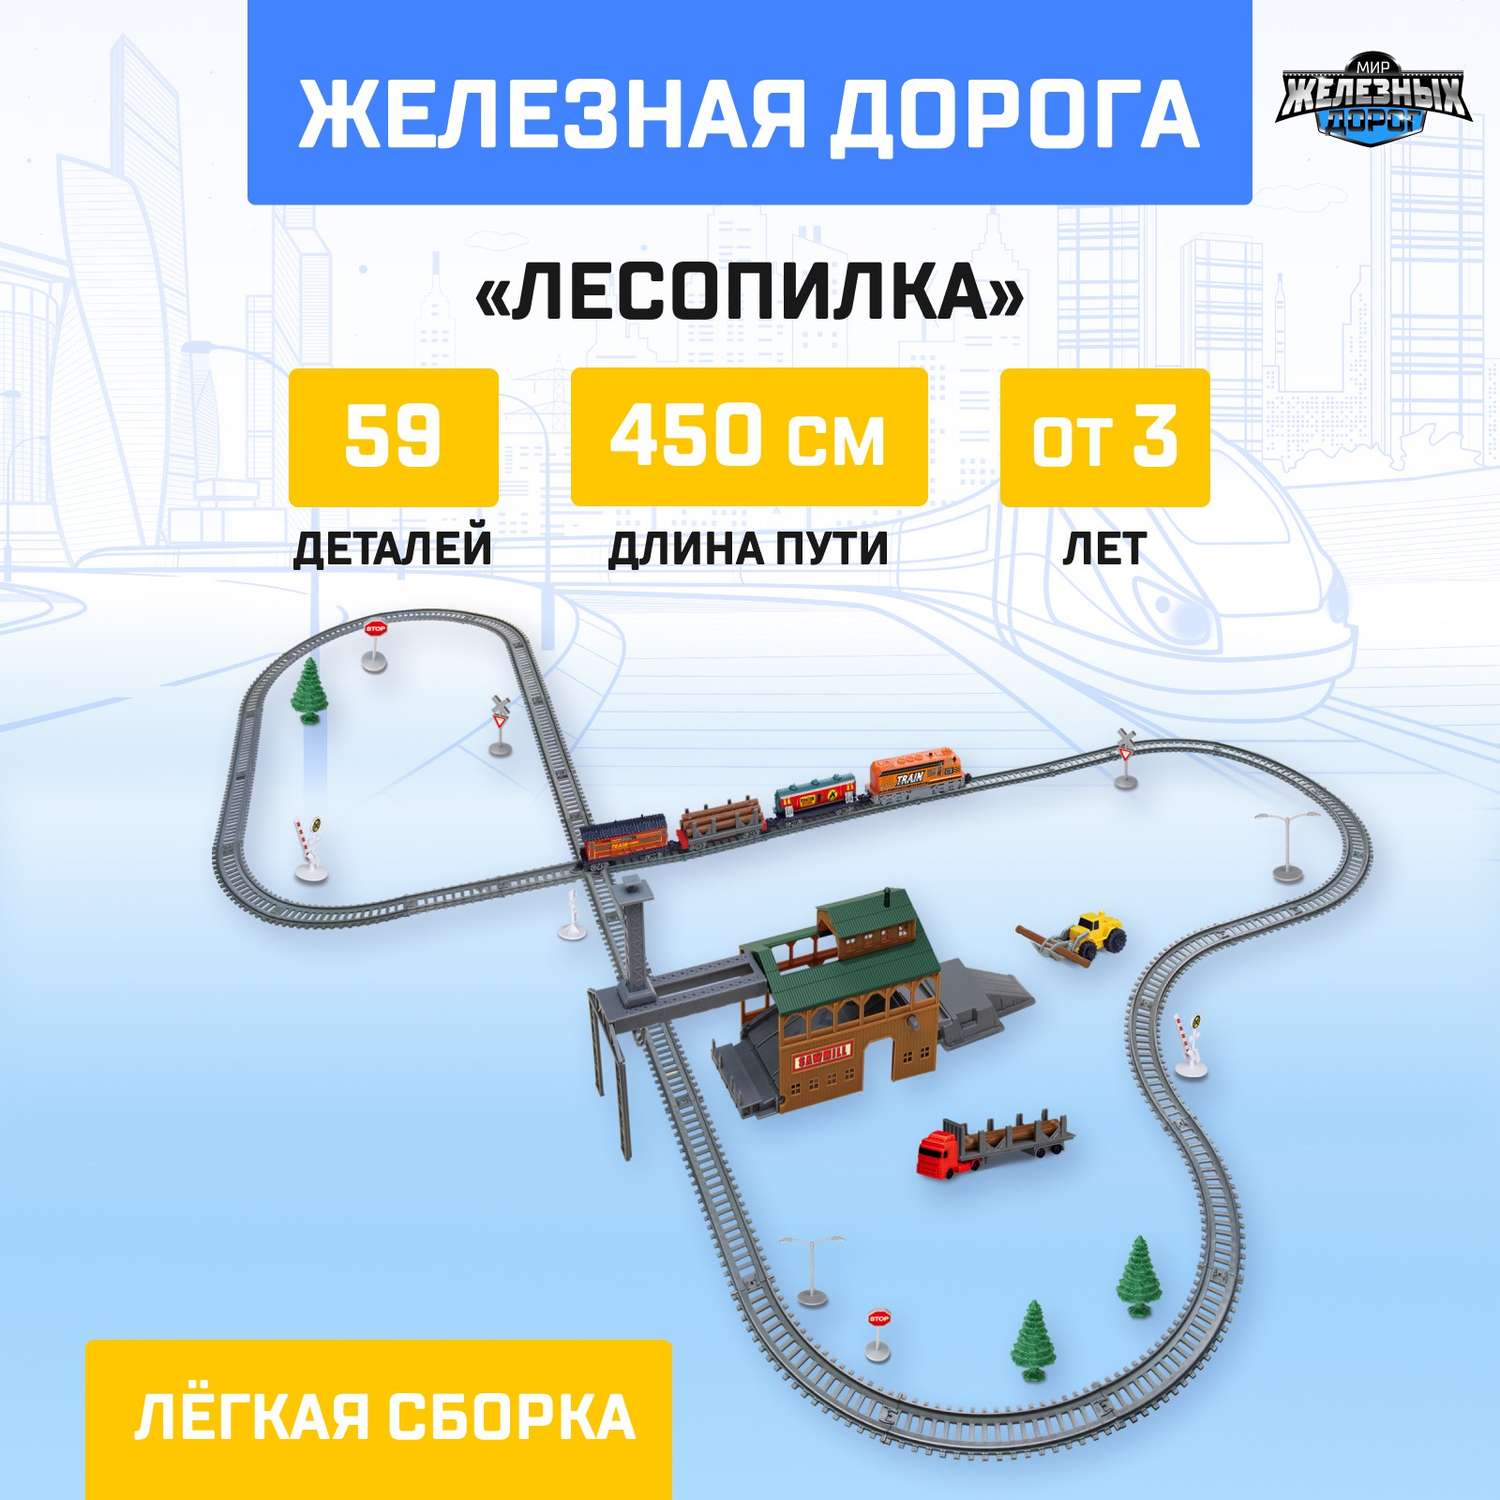 Железная дорога Автоград «Лесопилка» работает от батареек длина пути 450 см 6781007 - фото 1